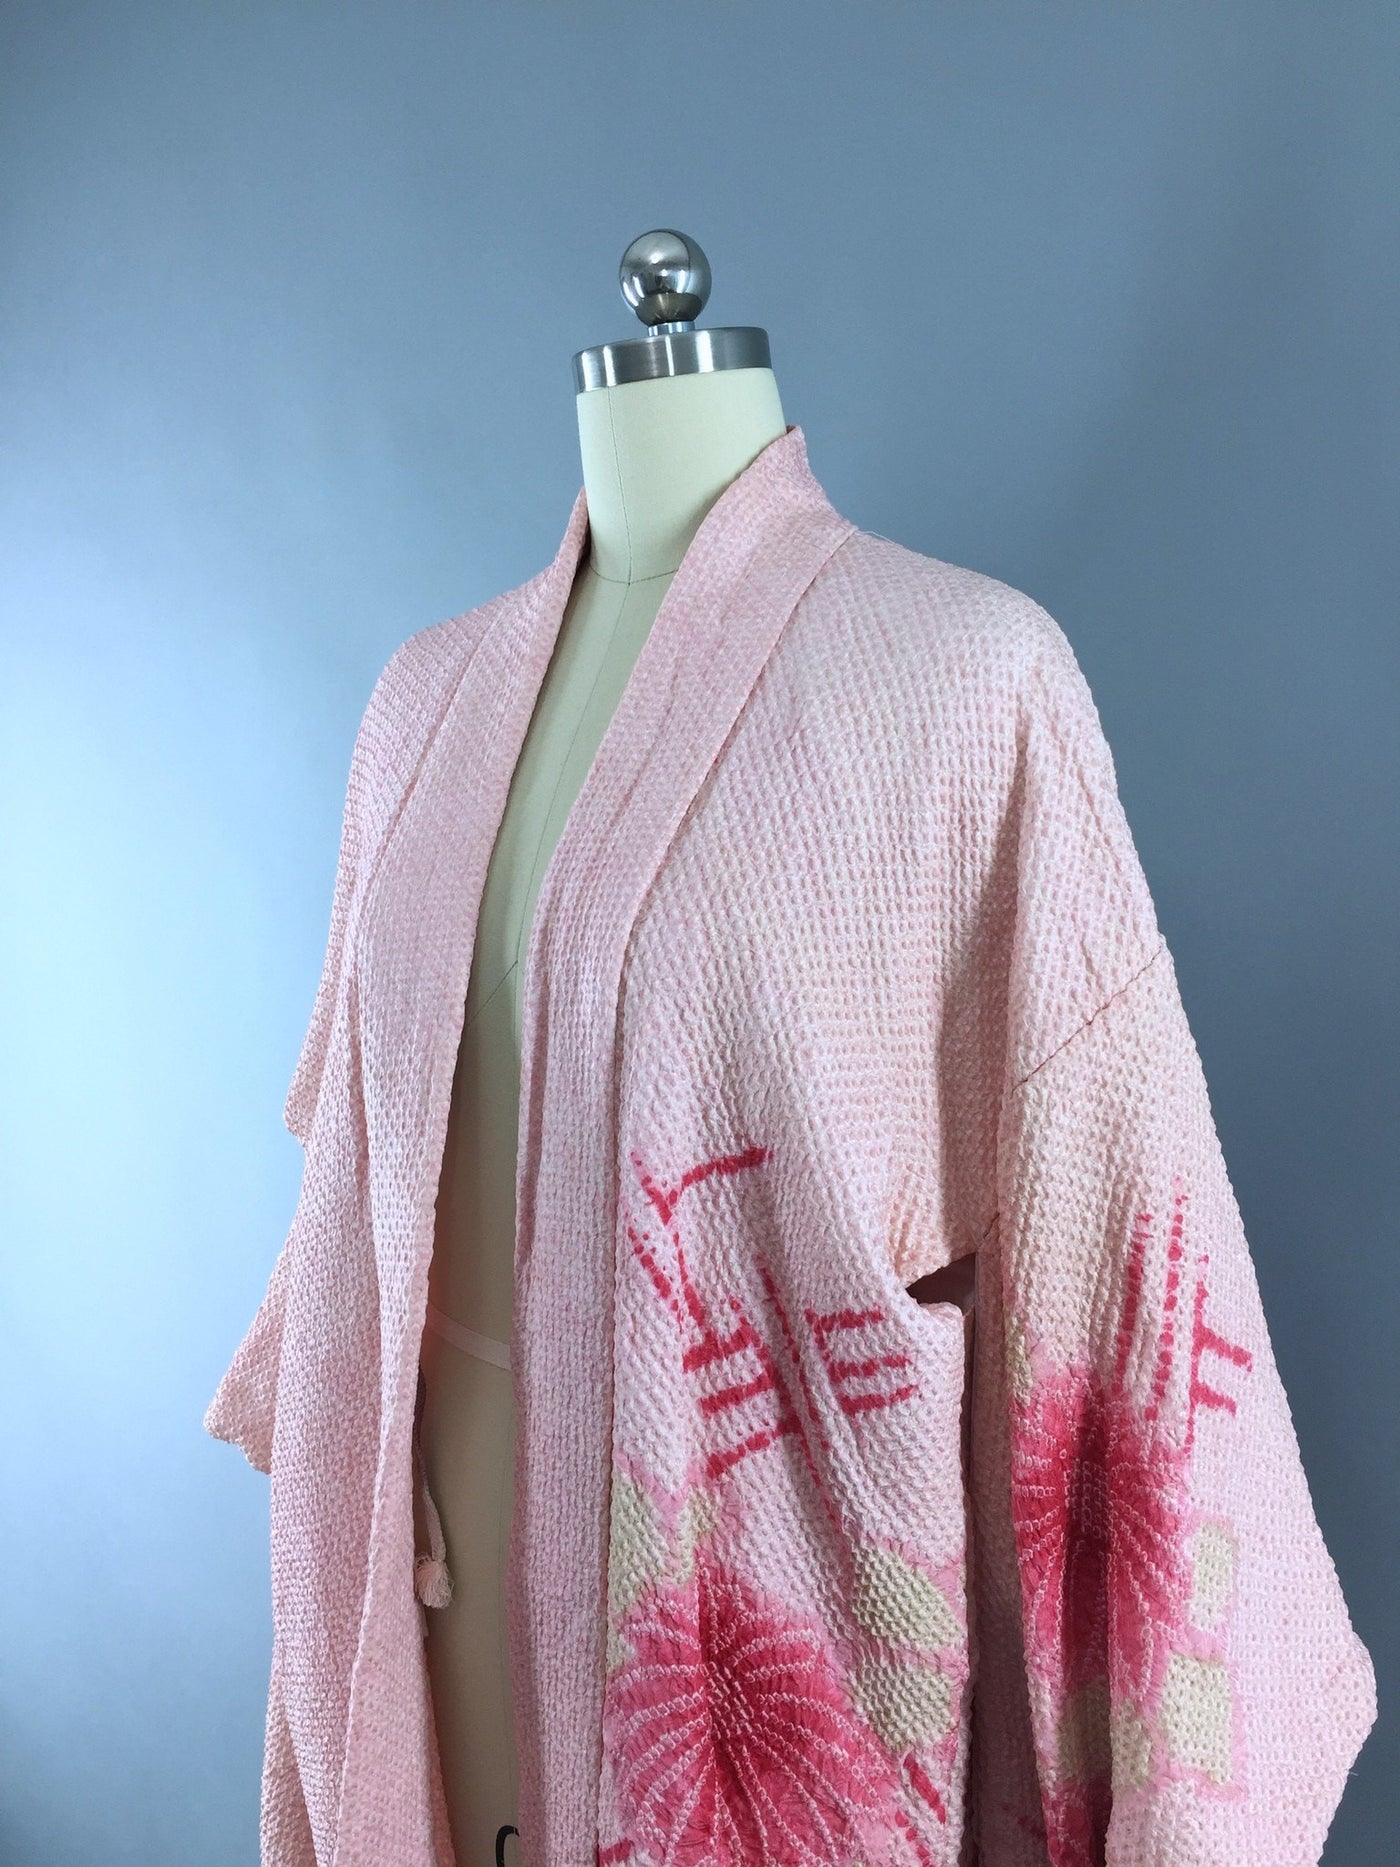 1960s Vintage Silk Haori Kimono Cardigan Jacket in Pink and White Shibori Floral - ThisBlueBird